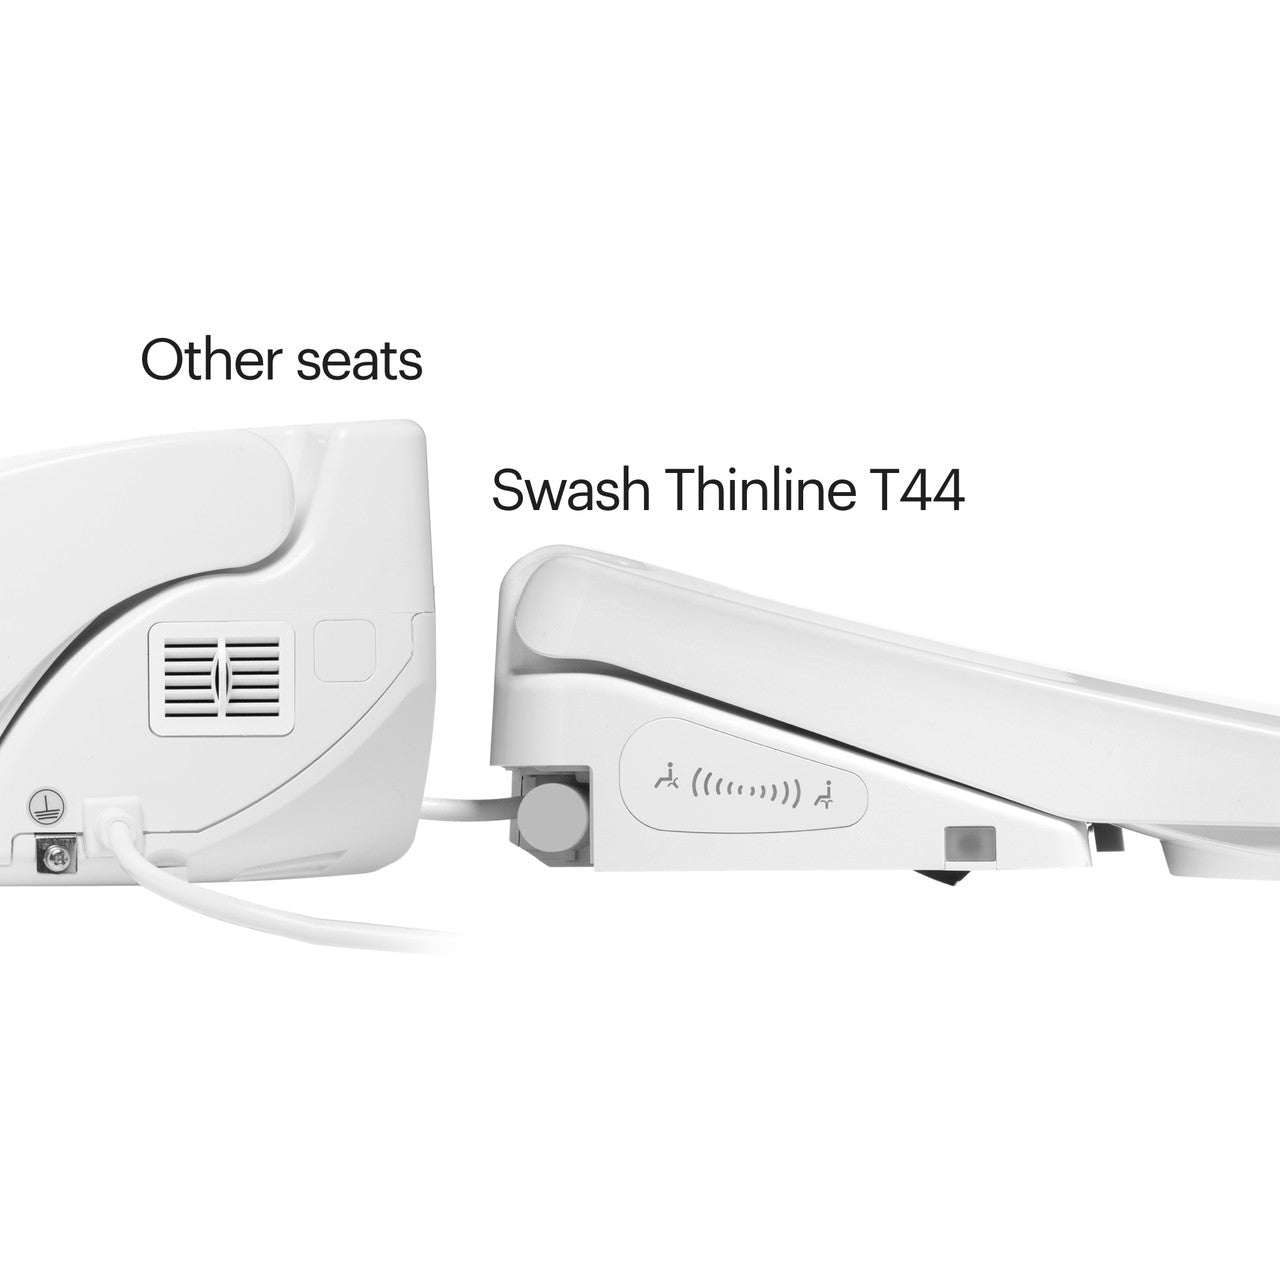 Brondell Swash Thinline T44 Luxury Bidet Seat - Remote Controlled